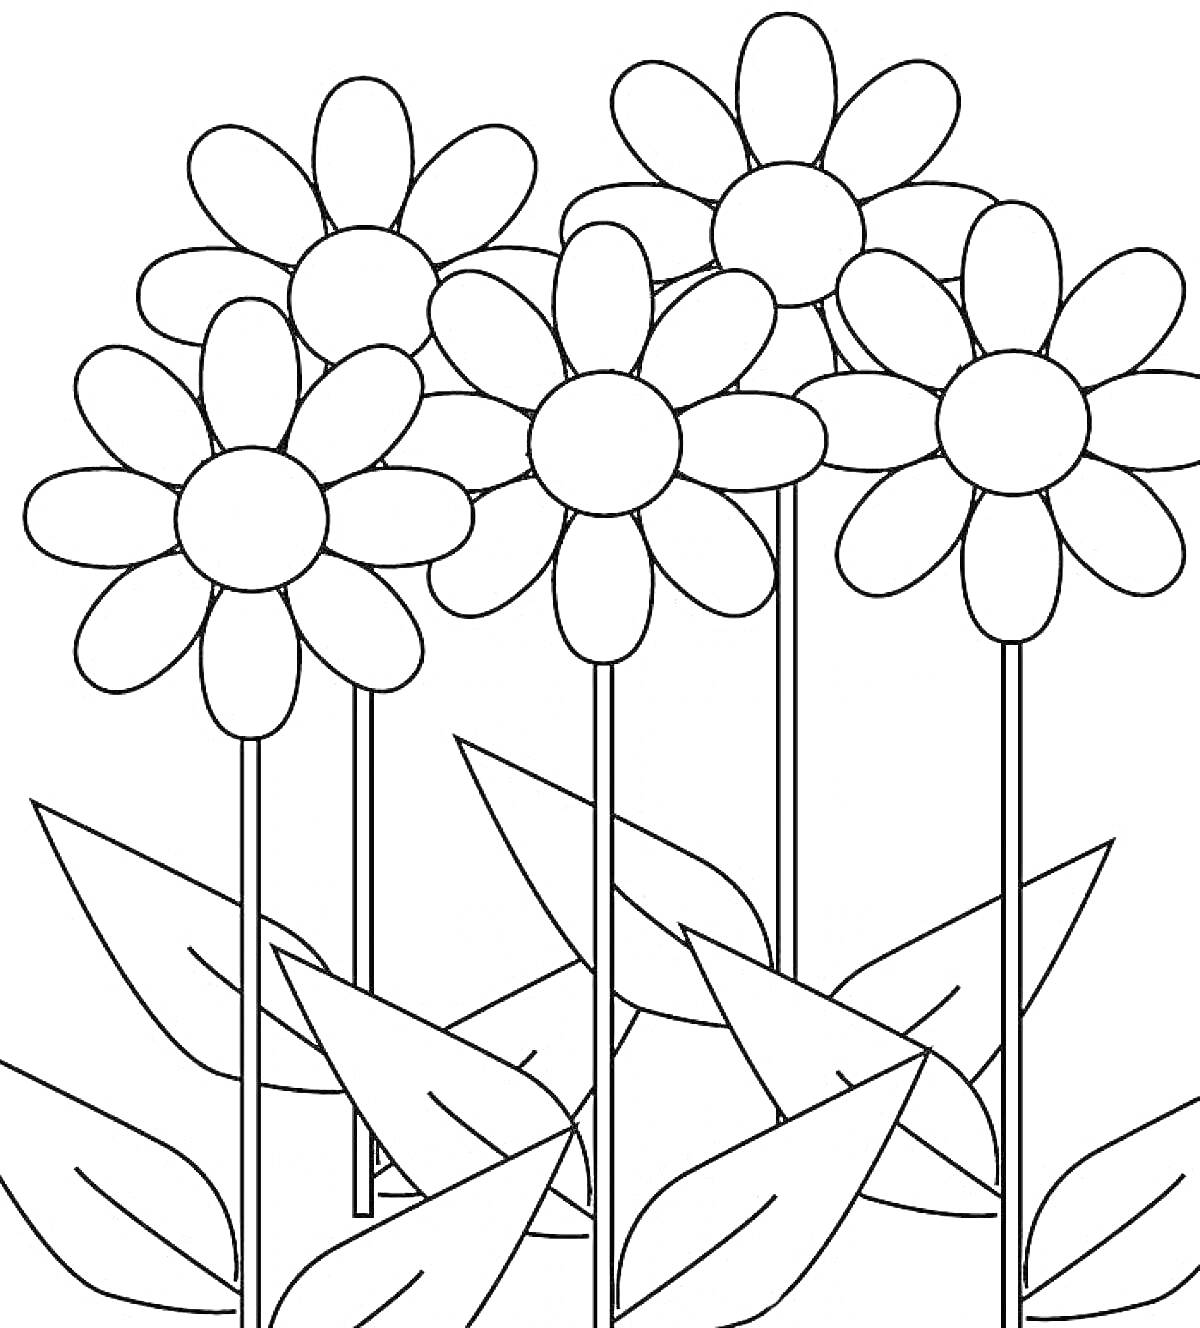 Раскраска Цветы на лугу, пять ромашек с крупными лепестками и листьями на стеблях